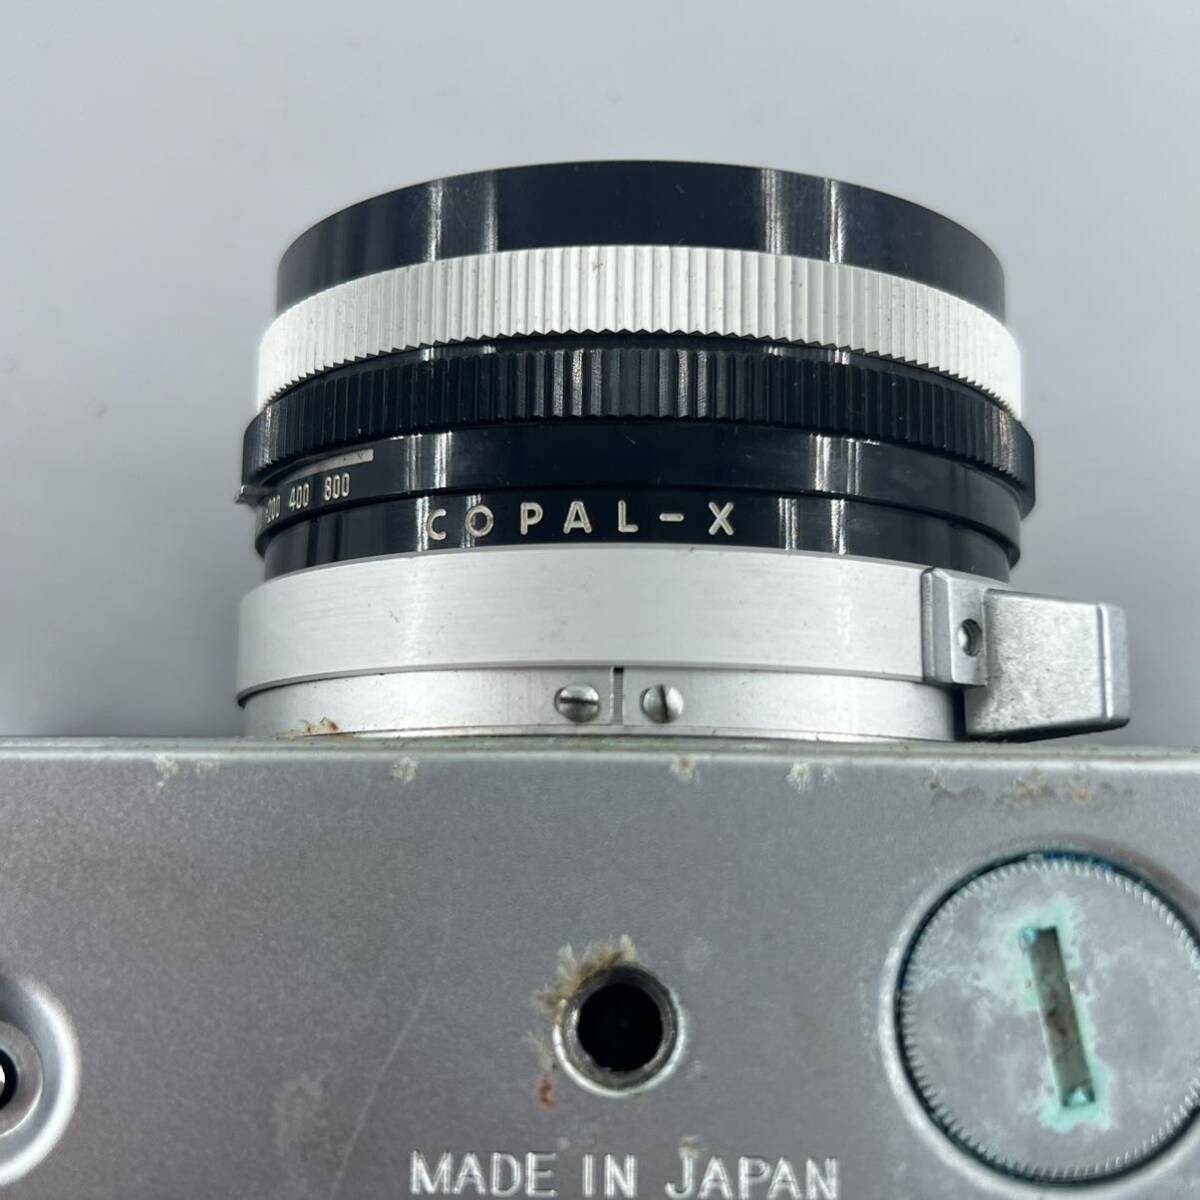 G4 OLYMPUS - 35 LC オリンパス フィルムカメラ 1:1.7 f=42mm KOPAL-X の画像7